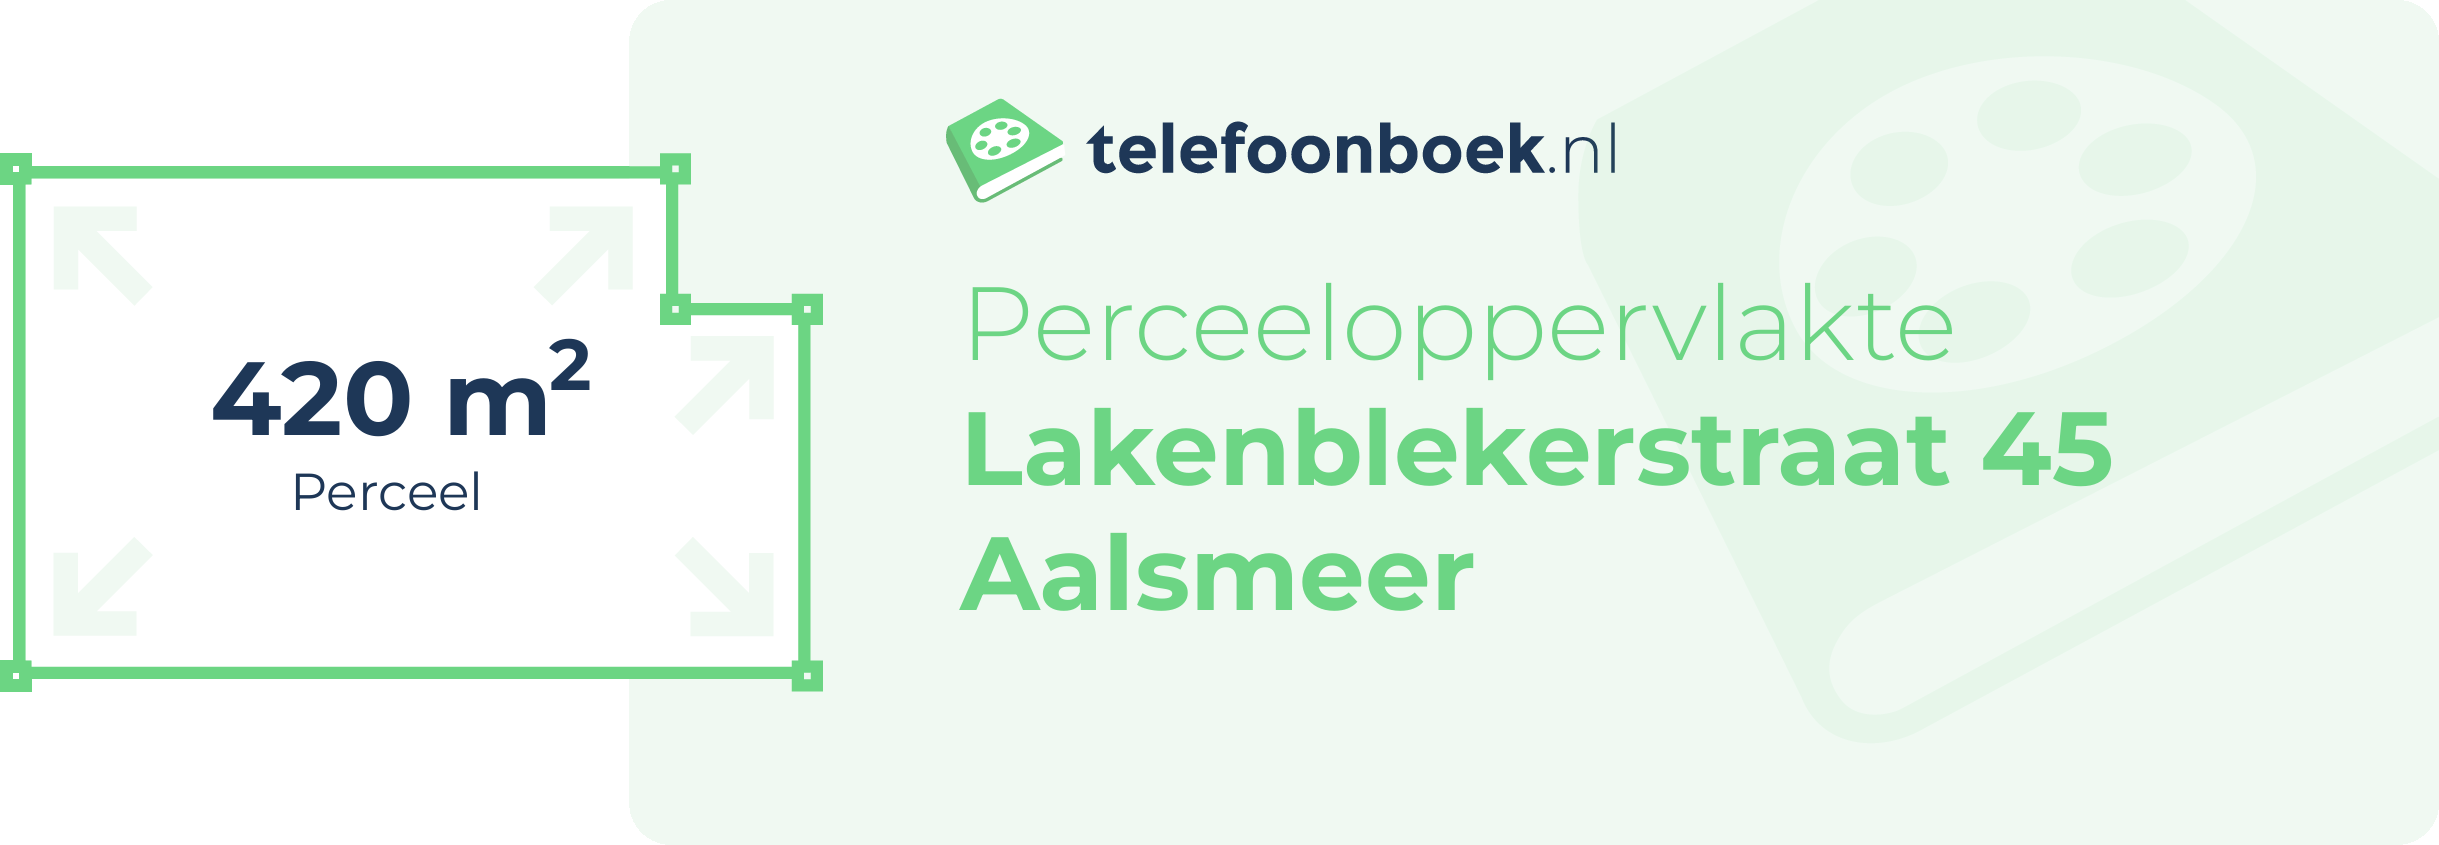 Perceeloppervlakte Lakenblekerstraat 45 Aalsmeer